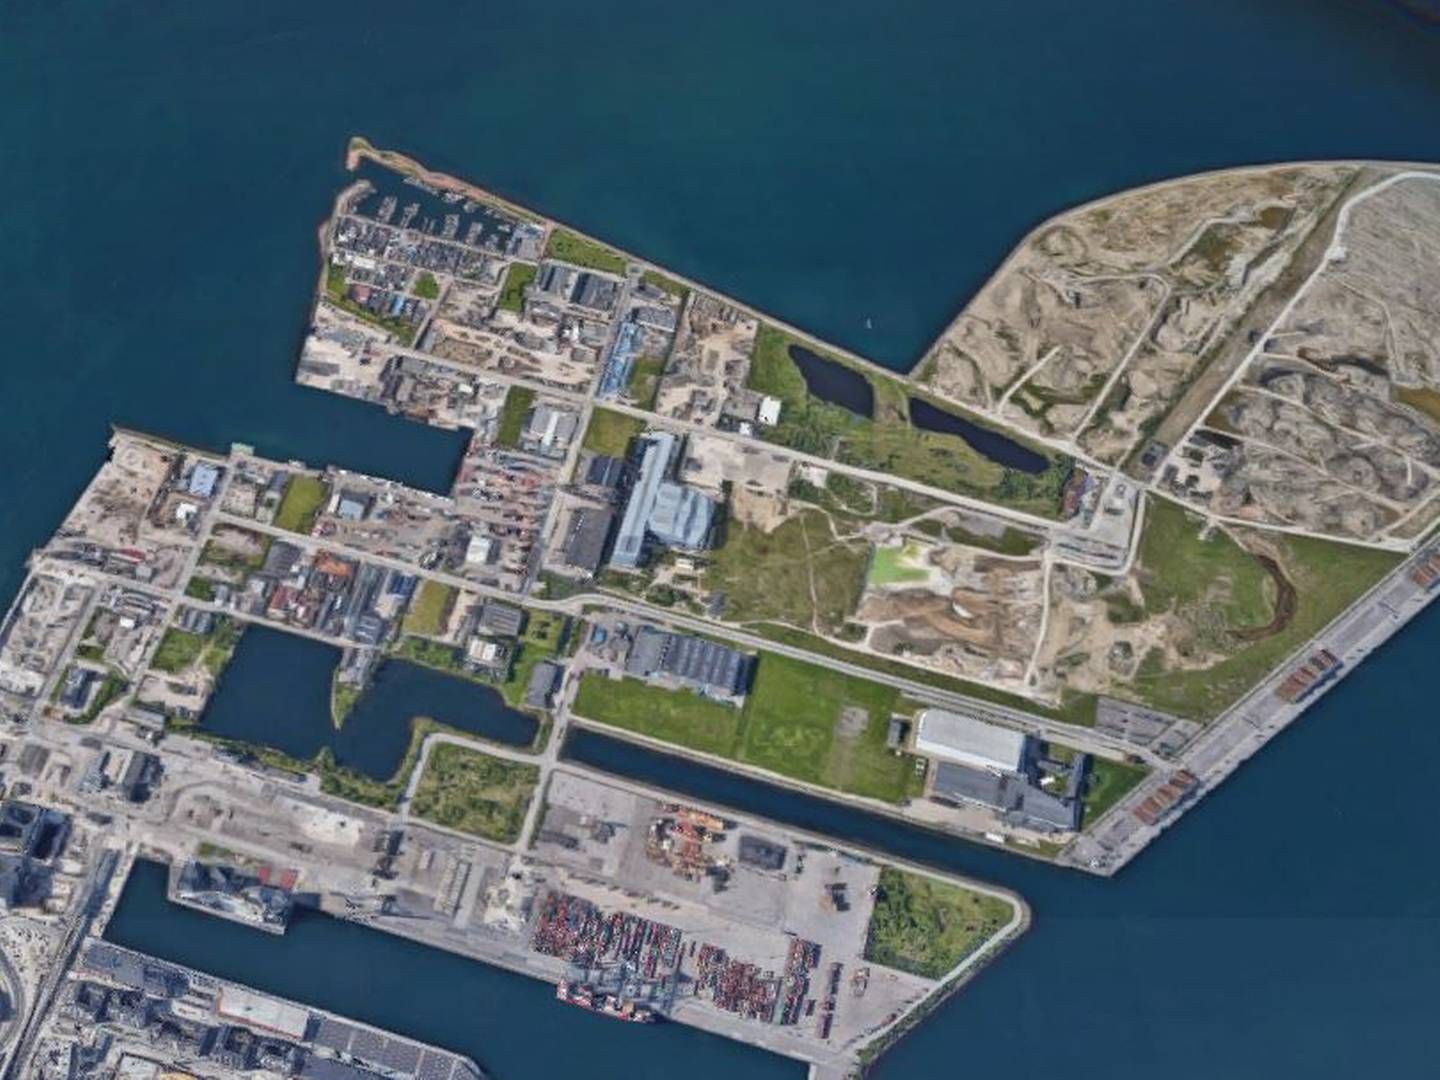 Den kommende bydel Svanemølleholm er placeret i den vestlige del af Nordhavn ind mod Svanemøllehavnen yderst til venstre i billedet. | Foto: Google Maps